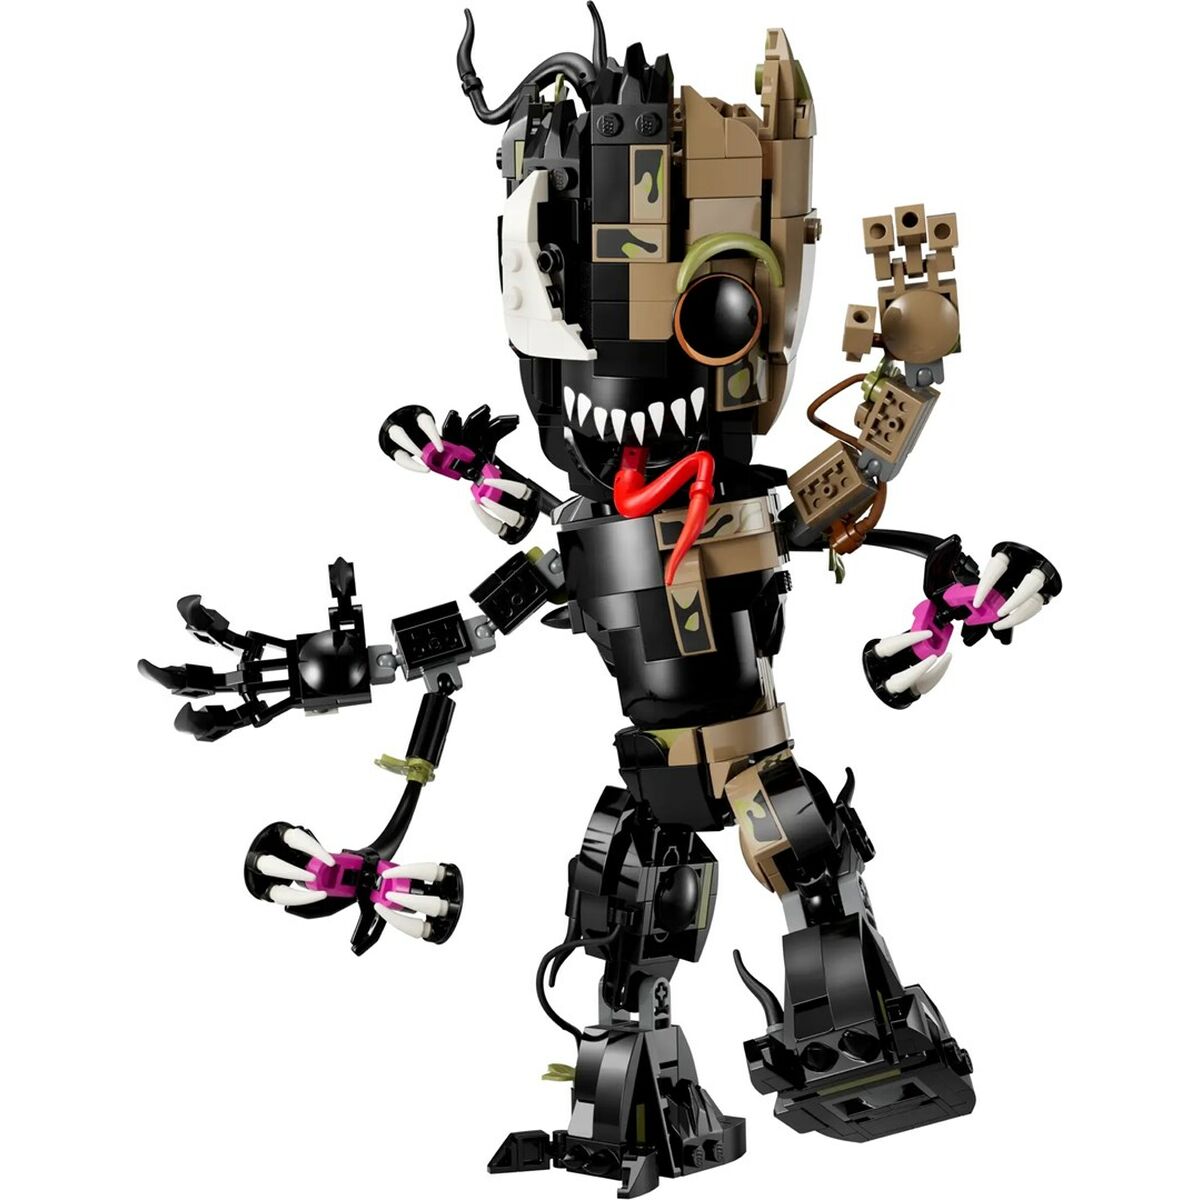 Lego 76249 Groot Venom 630 Daudzums Melns